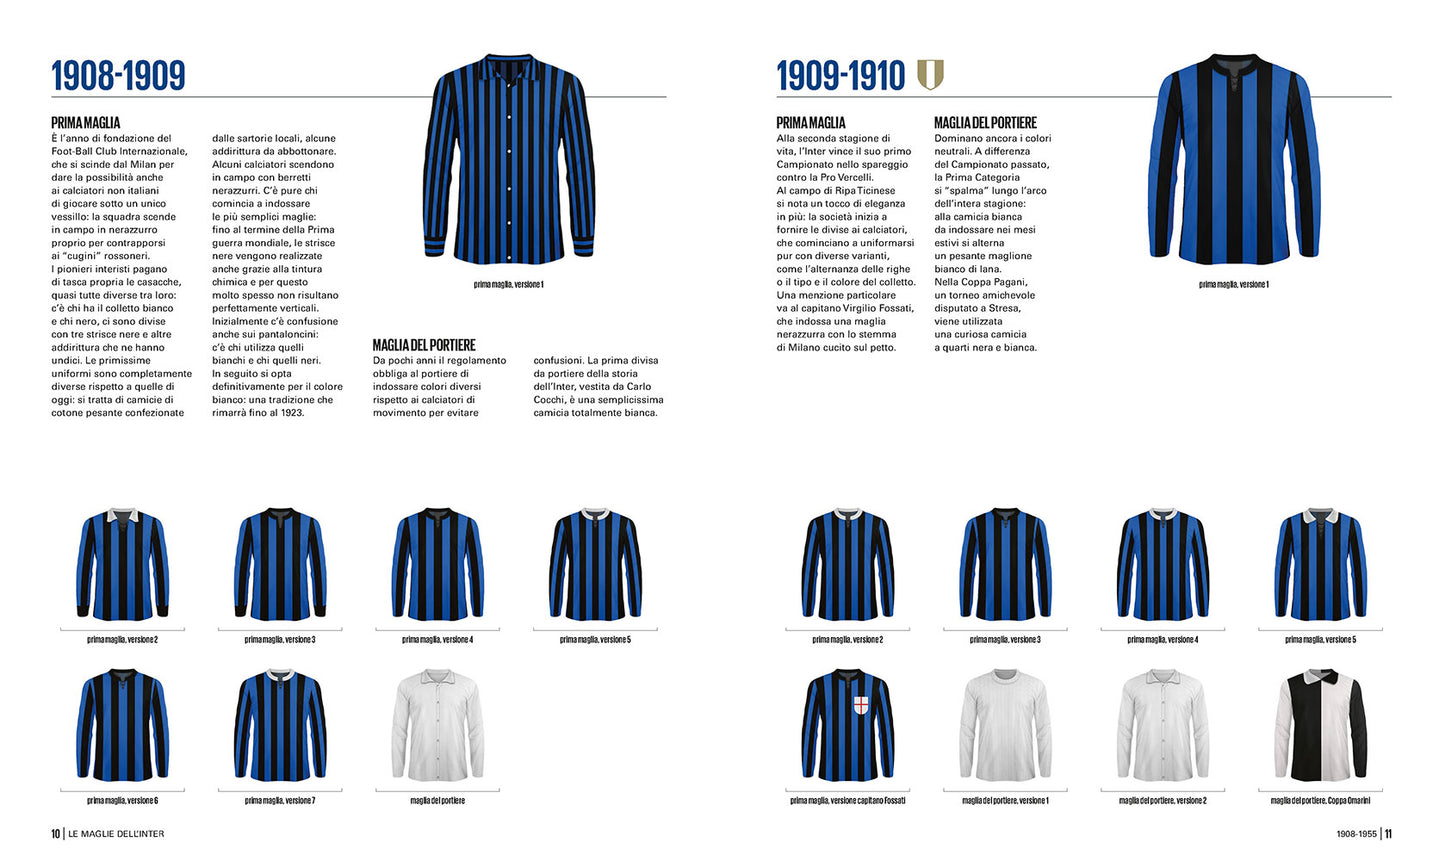 Le maglie dell'Inter. Tutte le divise nerazzurre dal 1908 a oggi